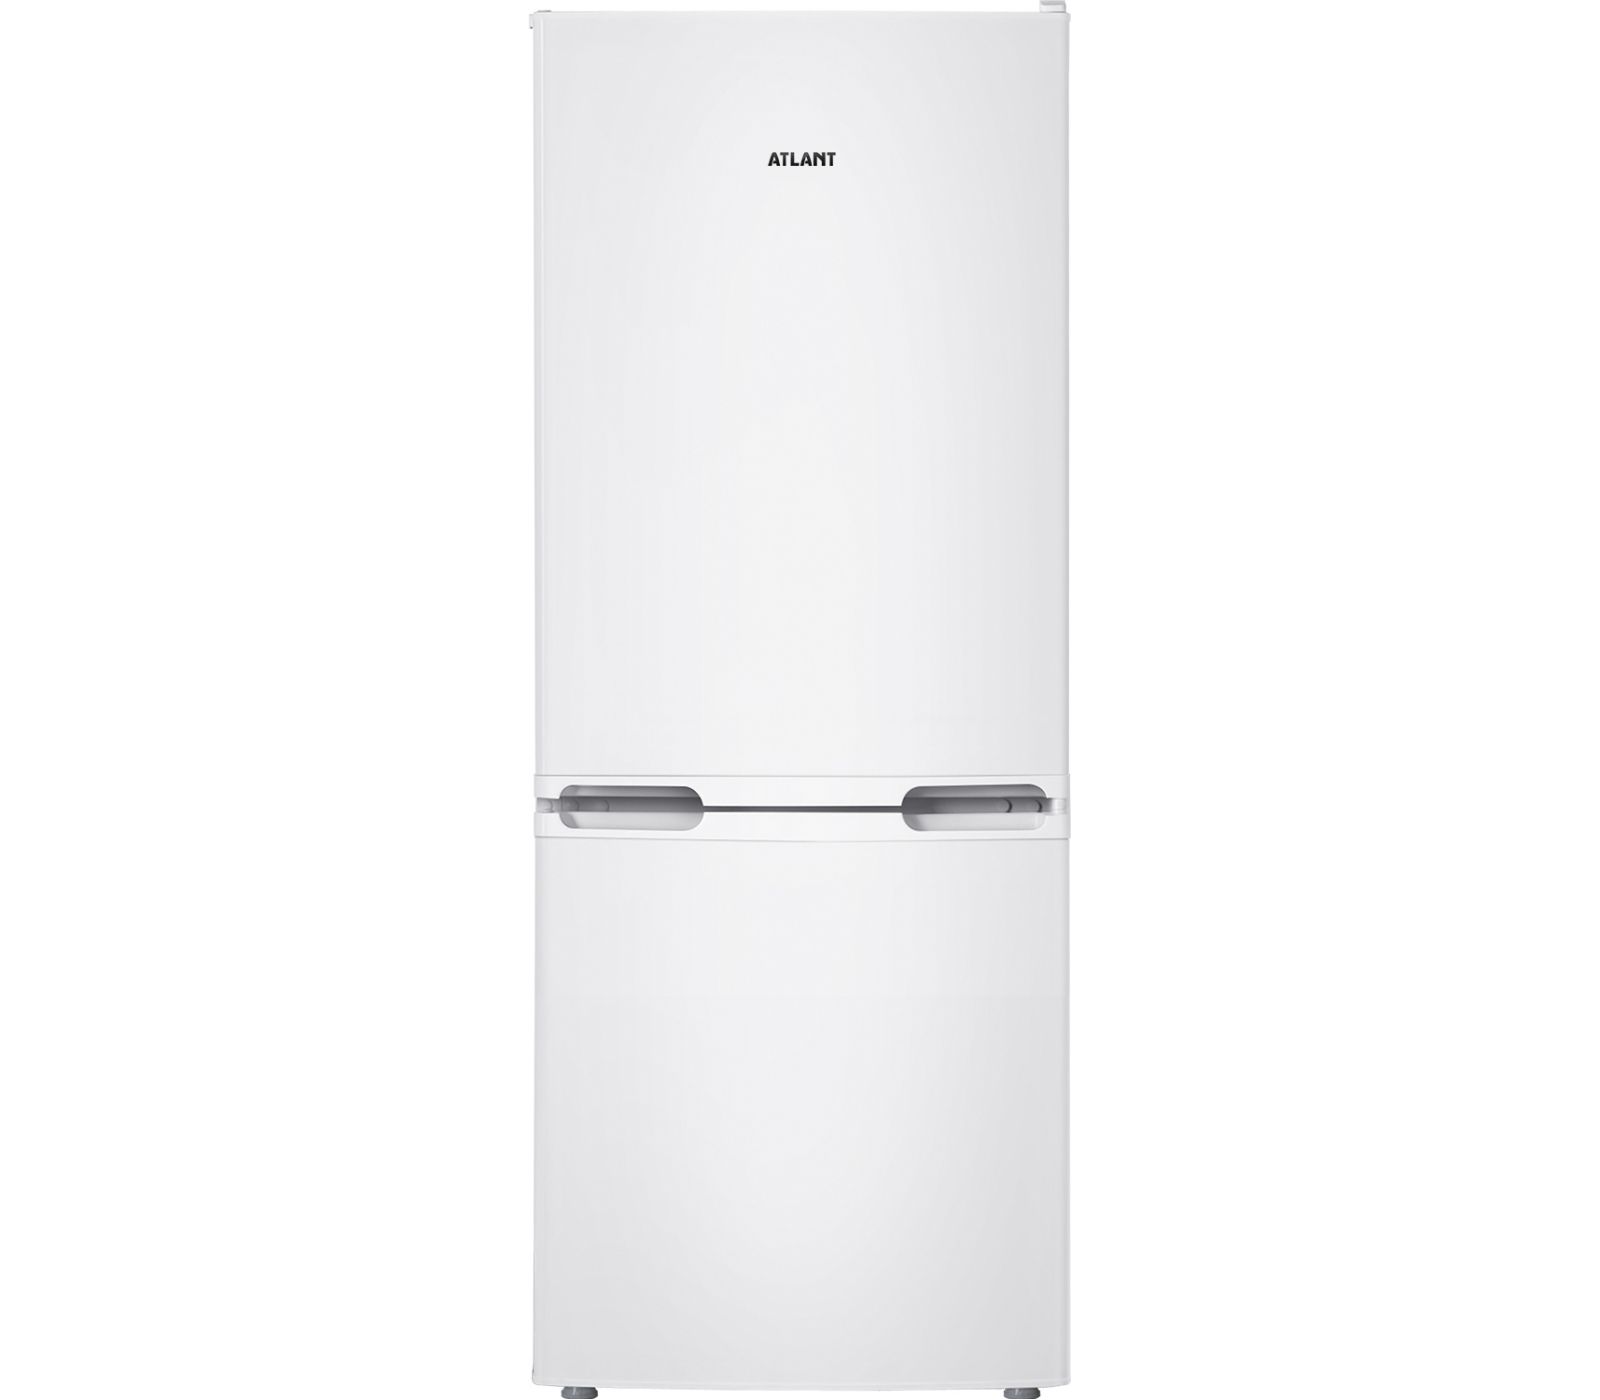 Узкий холодильник 50 купить. Холодильник ATLANT хм 4625-101. Холодильник XM 4209-000 ATLANT. Холодильник Атлант 4208-000. Холодильник Атлант хм 4210-000.